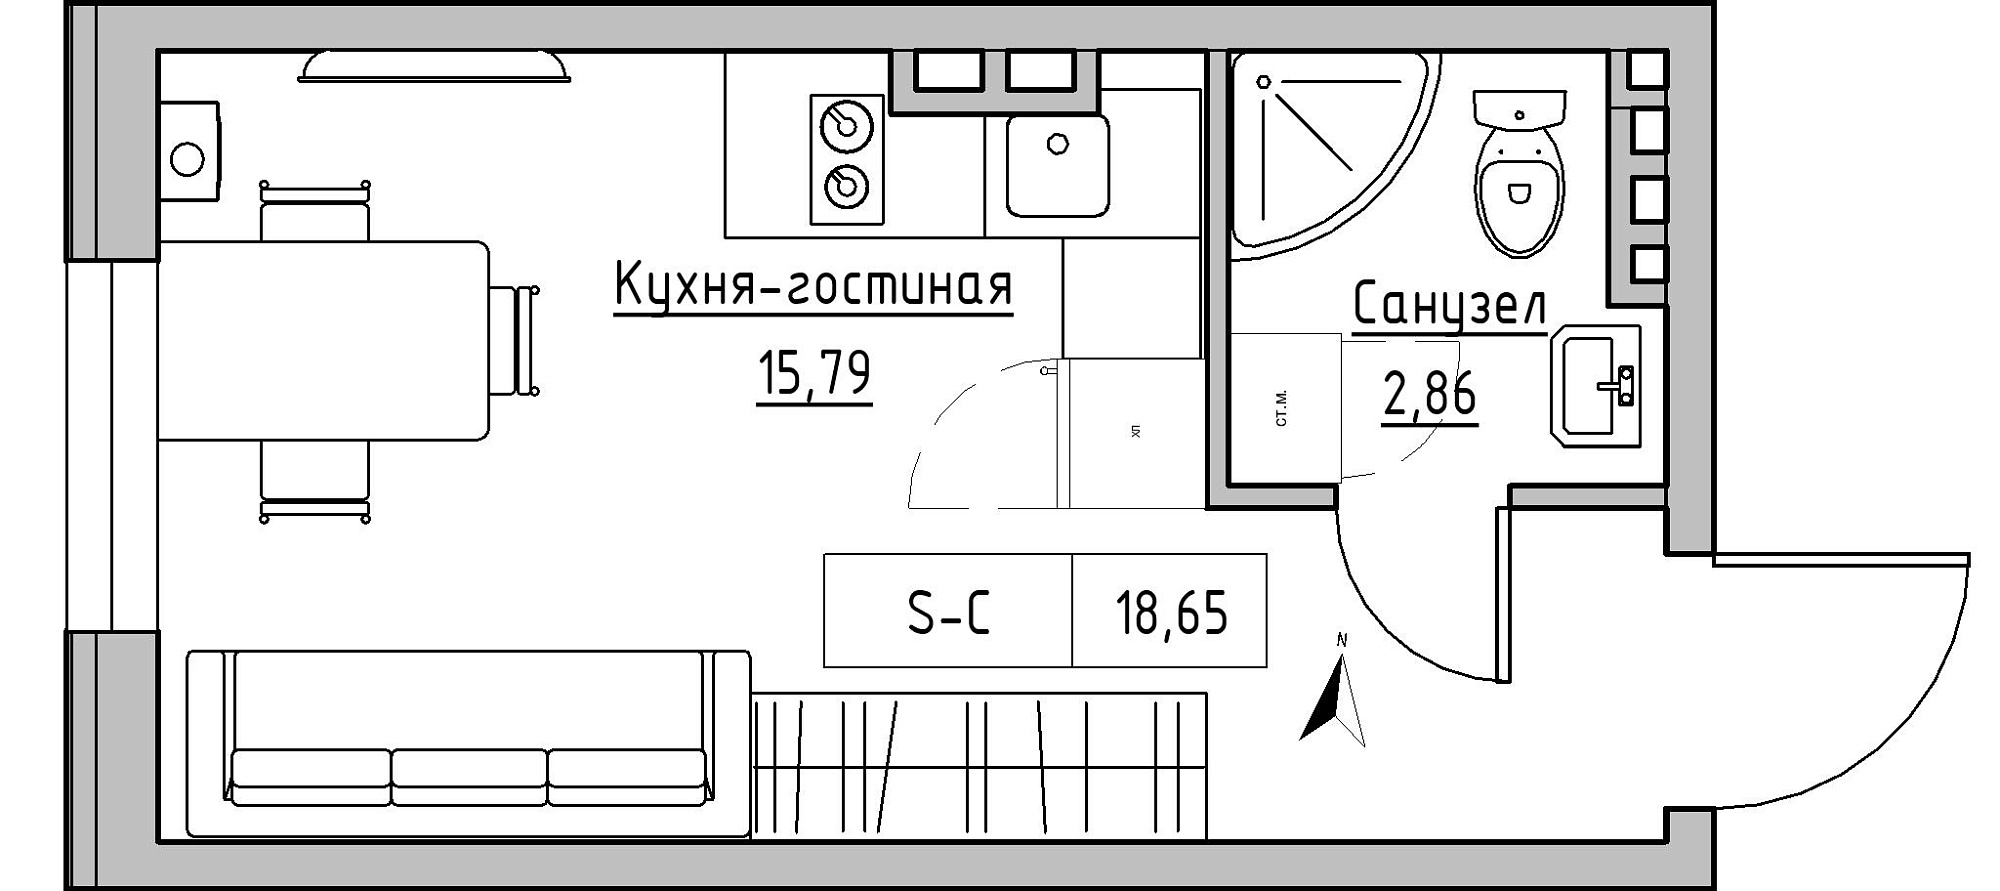 Планування Smart-квартира площею 18.65м2, KS-024-02/0011.